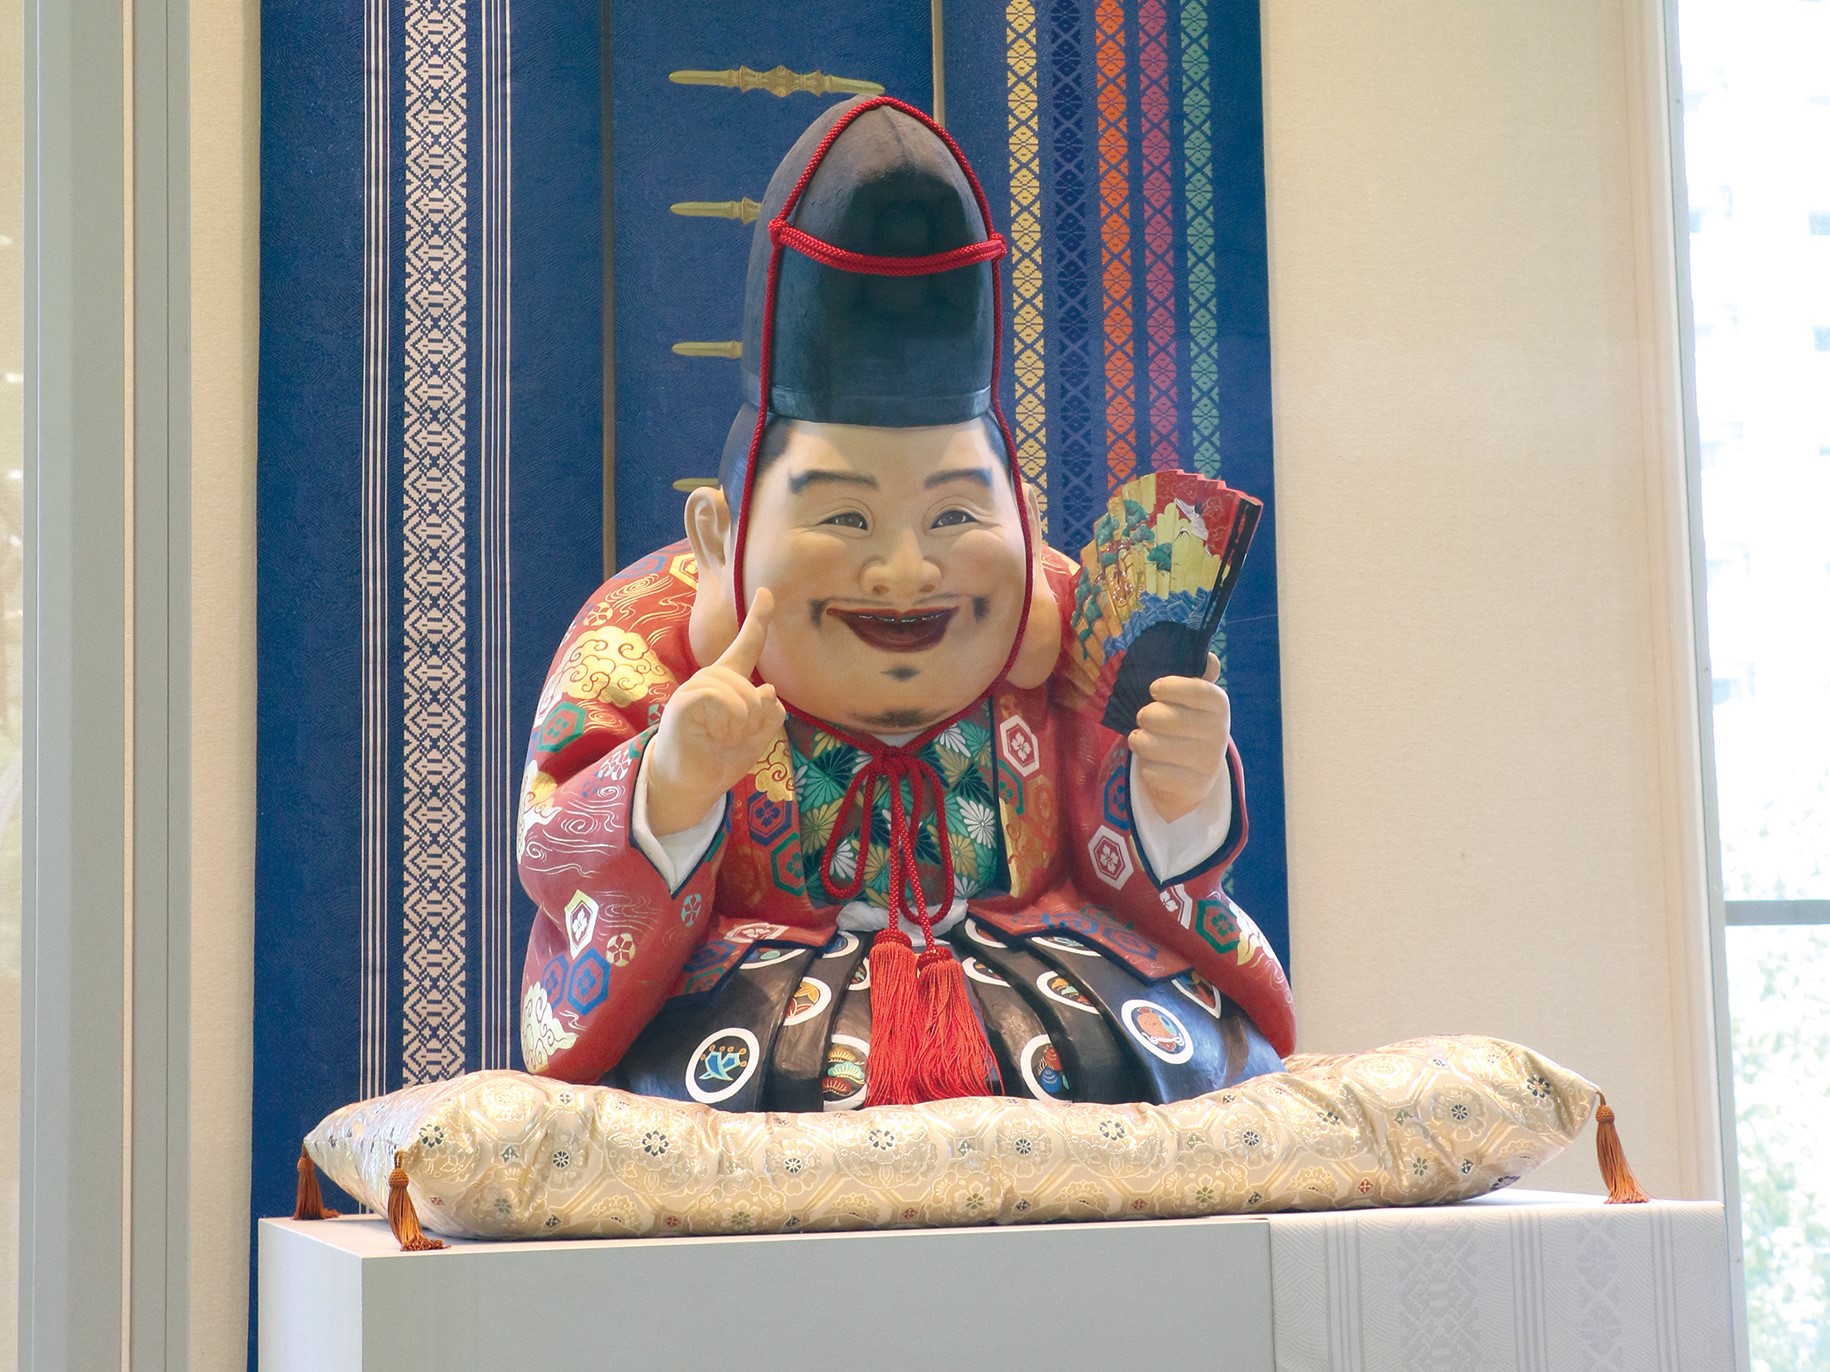 はかた伝統工芸館で迎える「福の神」の人形の写真